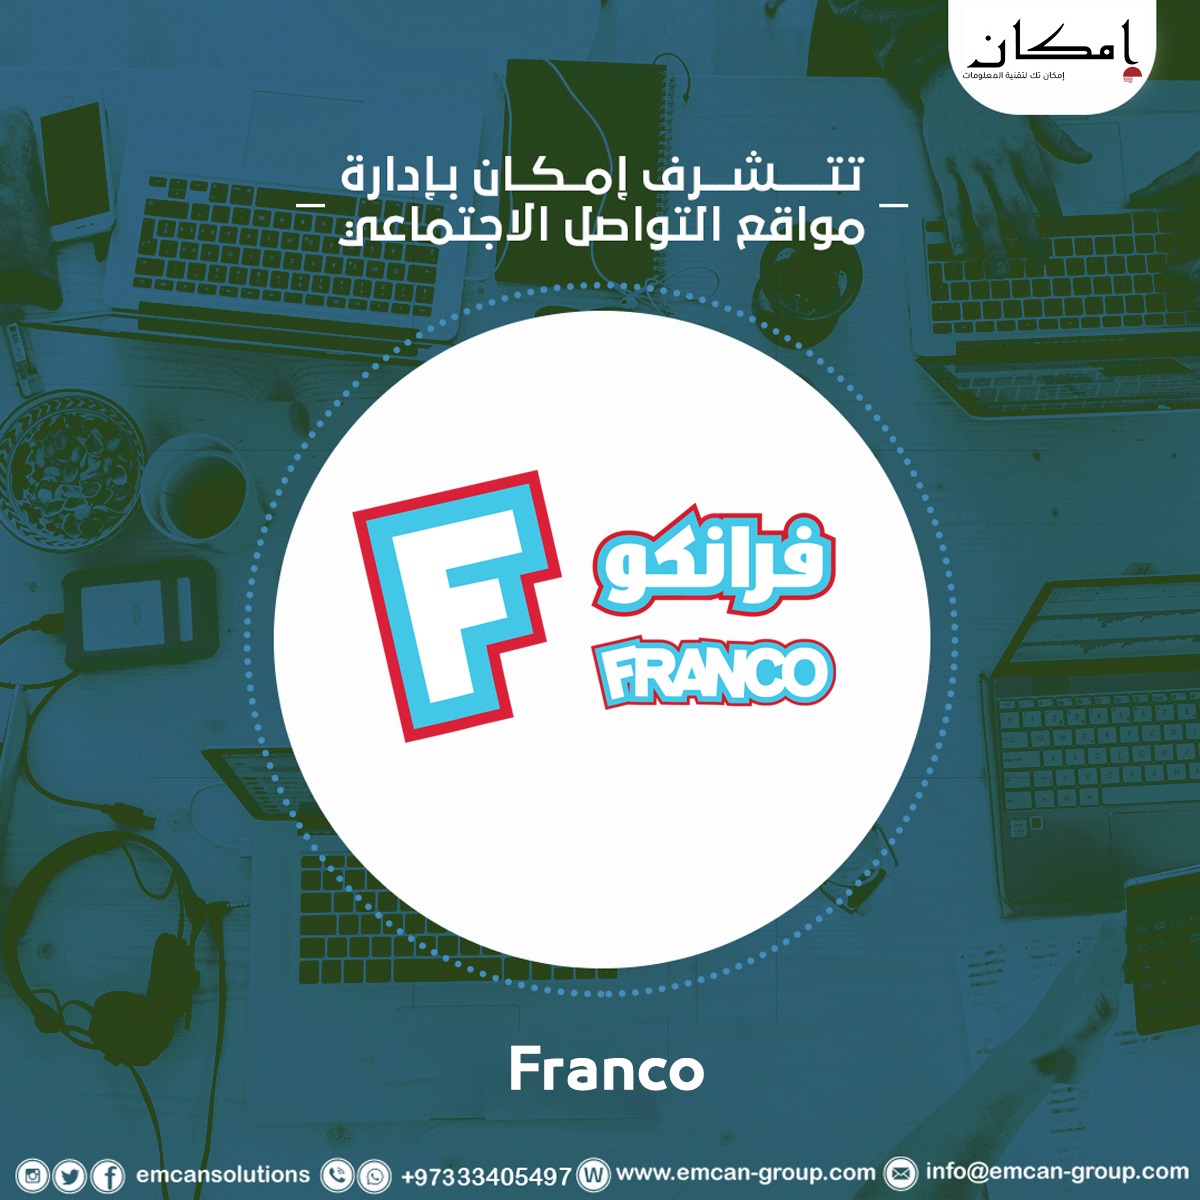 Managing social media for Francos restaurant